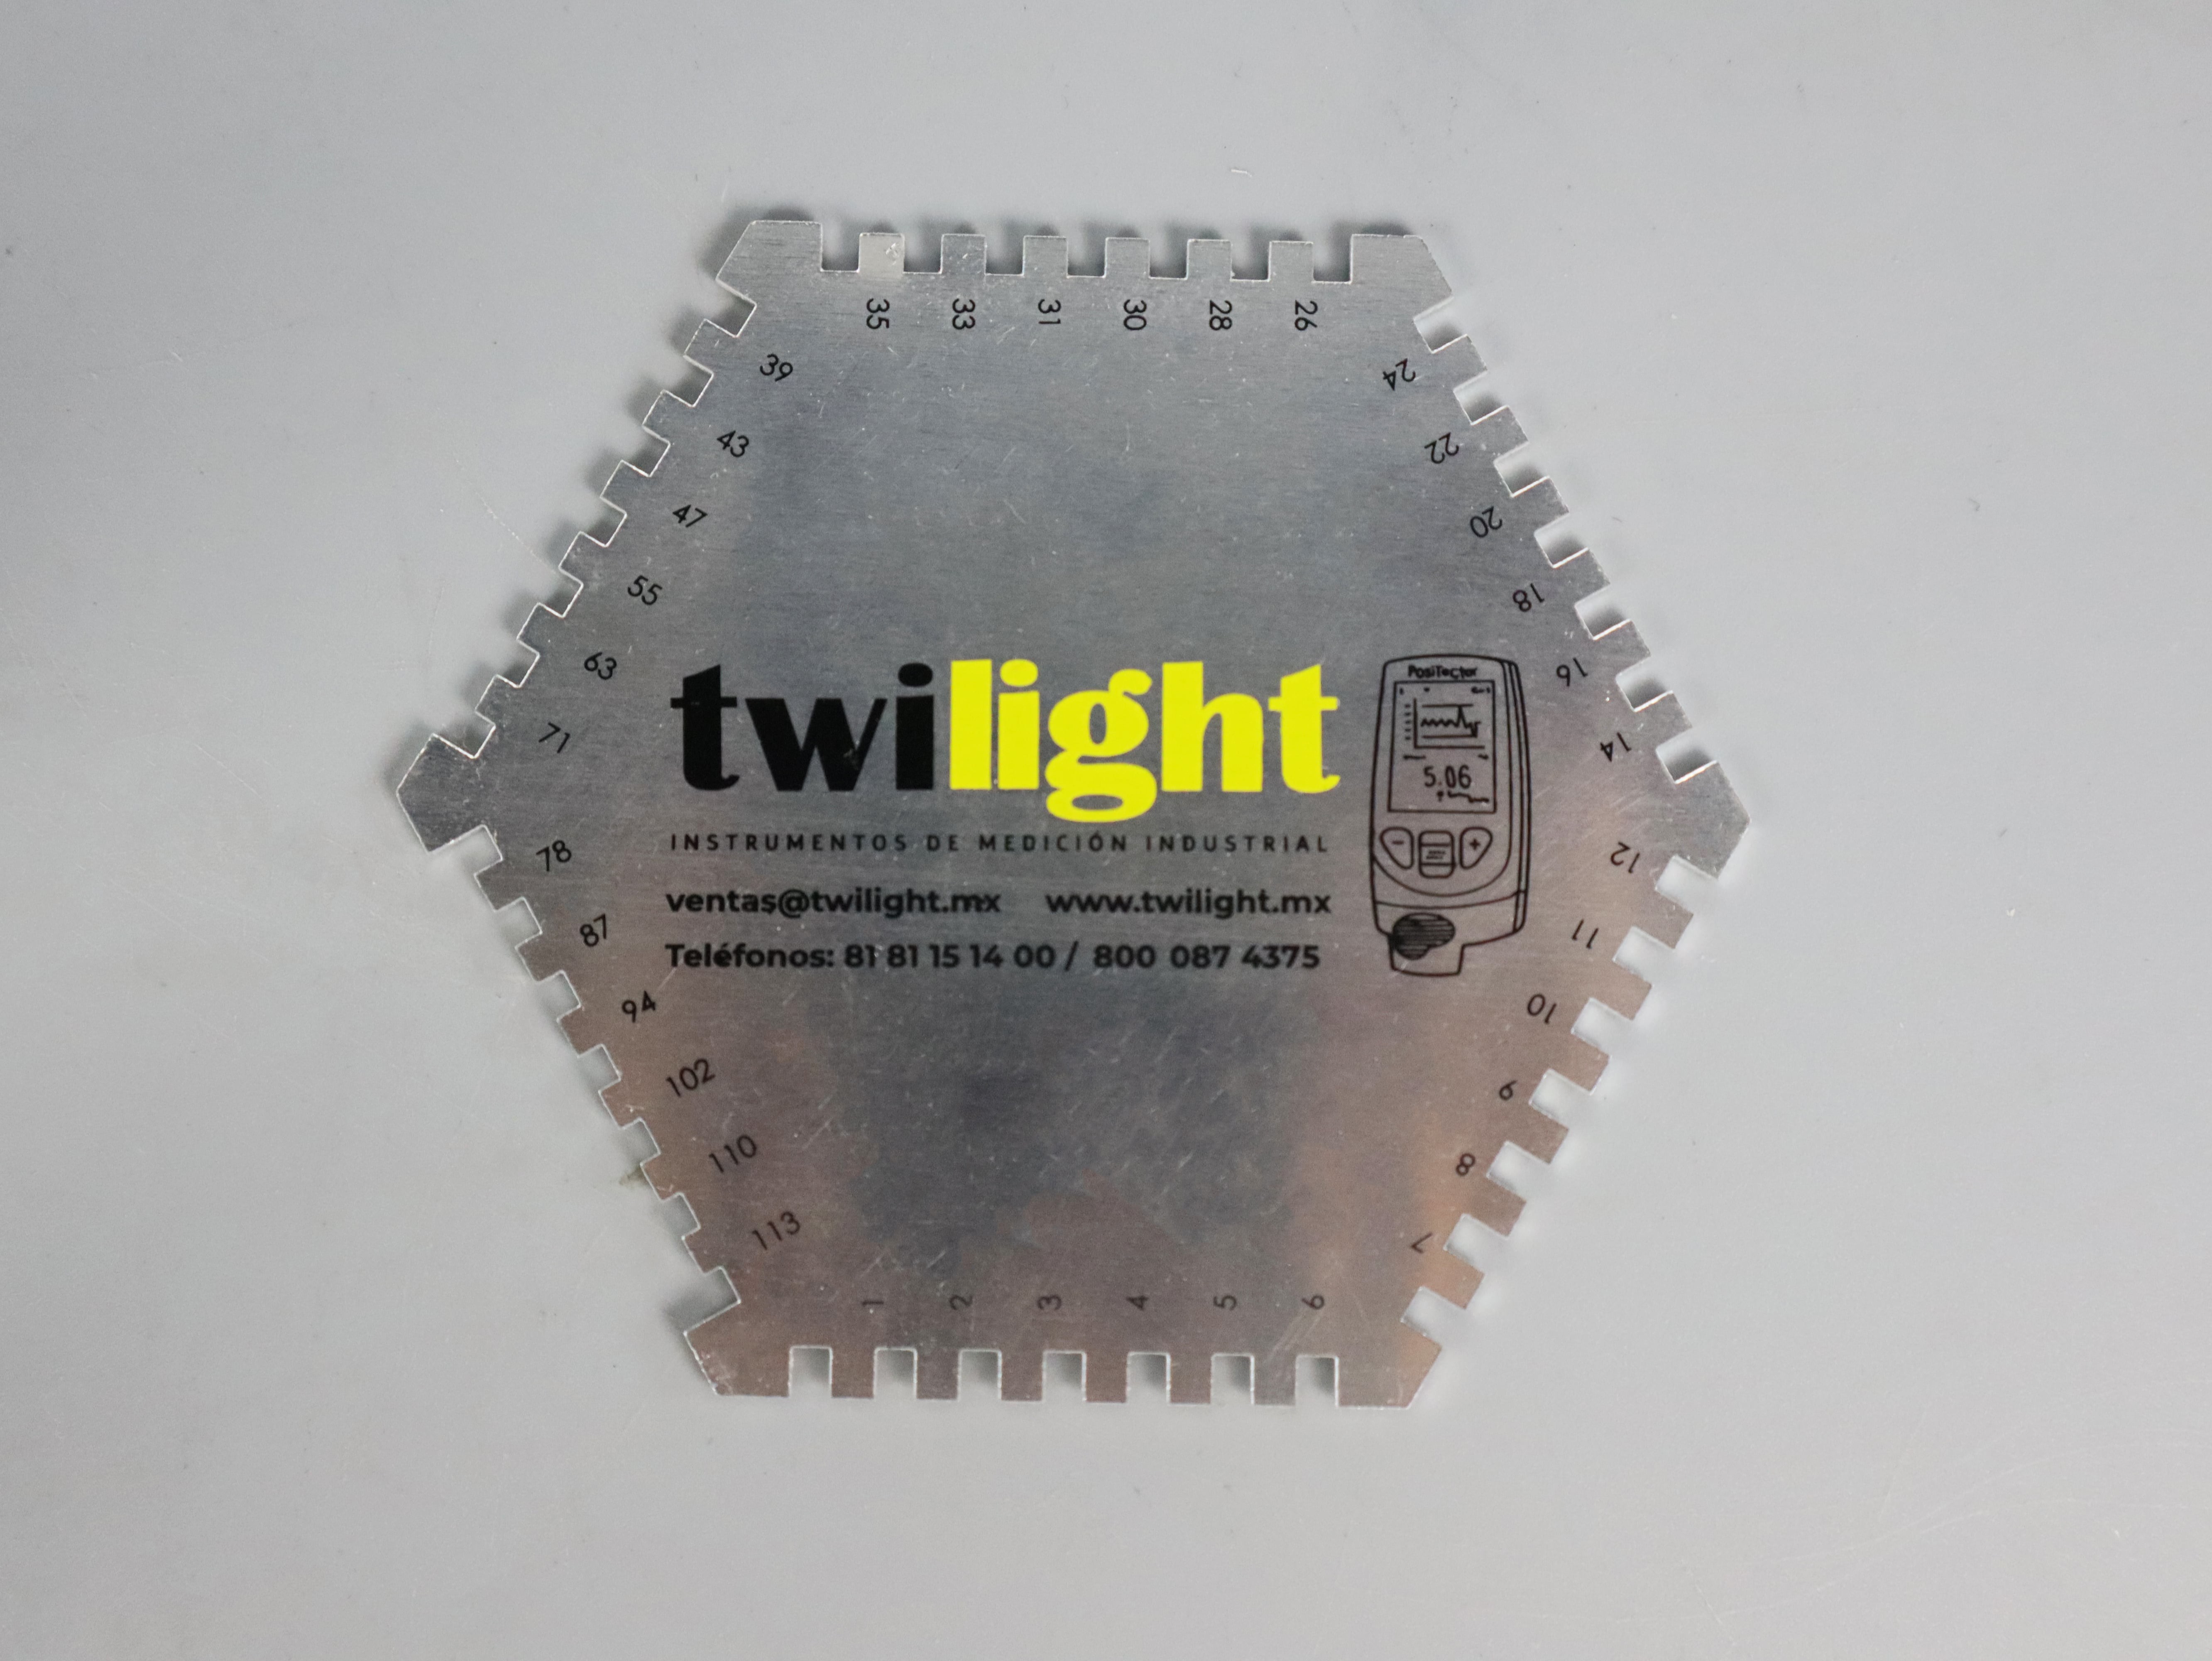 ZZH-WFGS-53-peine-de-espesor-hu-medo-de-aluminio-logotipo-twilight-rango-1-113-mils-zh-min-jpg